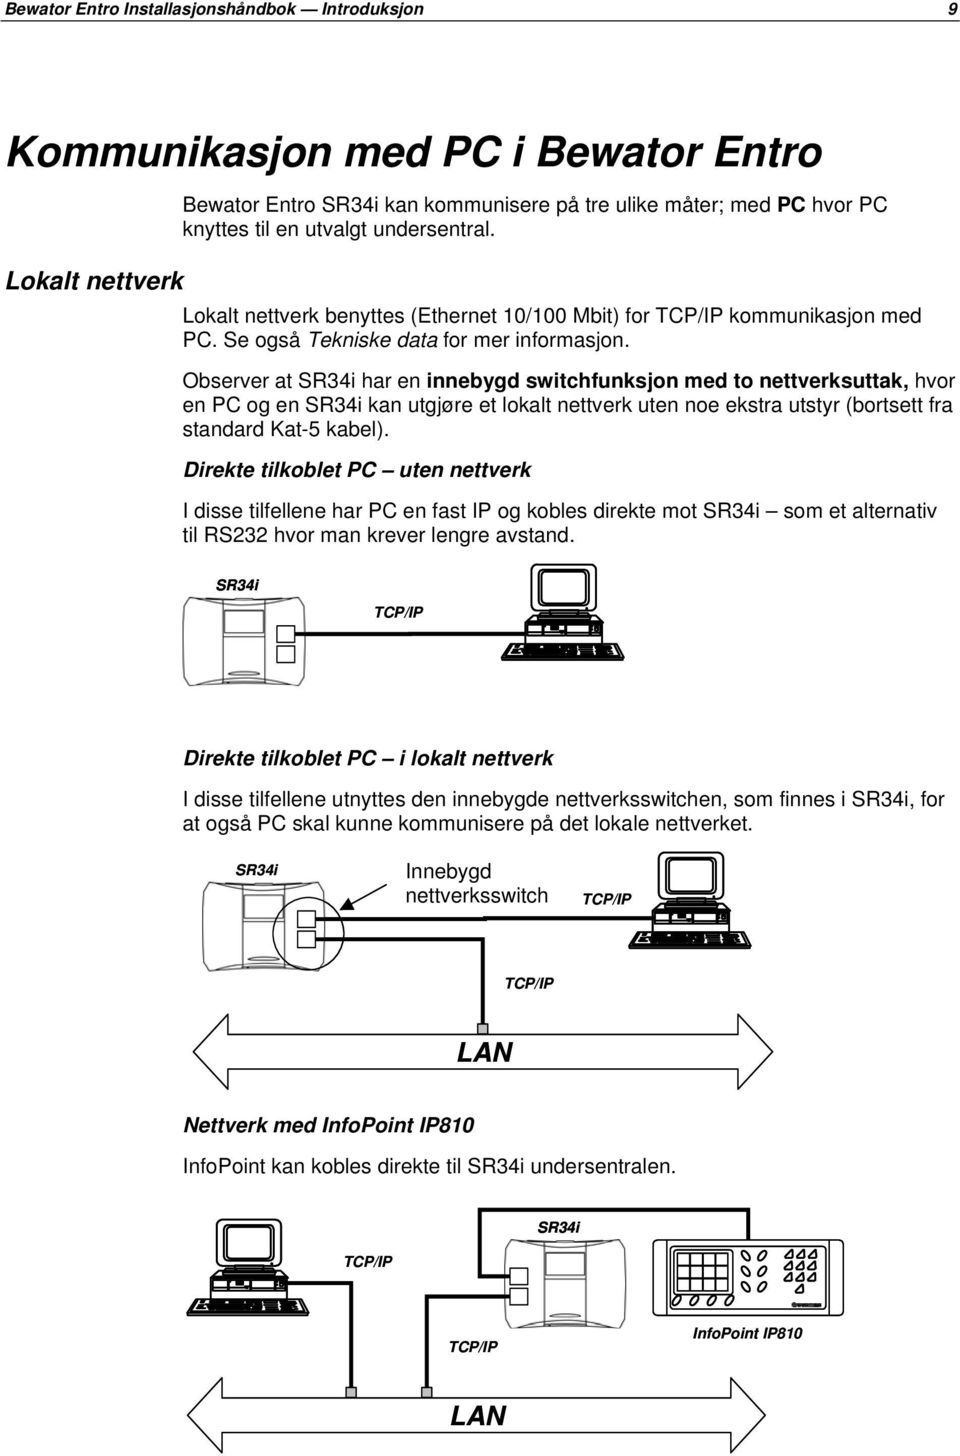 Observer at SR34i har en innebygd switchfunksjon med to nettverksuttak, hvor en PC og en SR34i kan utgjøre et lokalt nettverk uten noe ekstra utstyr (bortsett fra standard Kat-5 kabel).